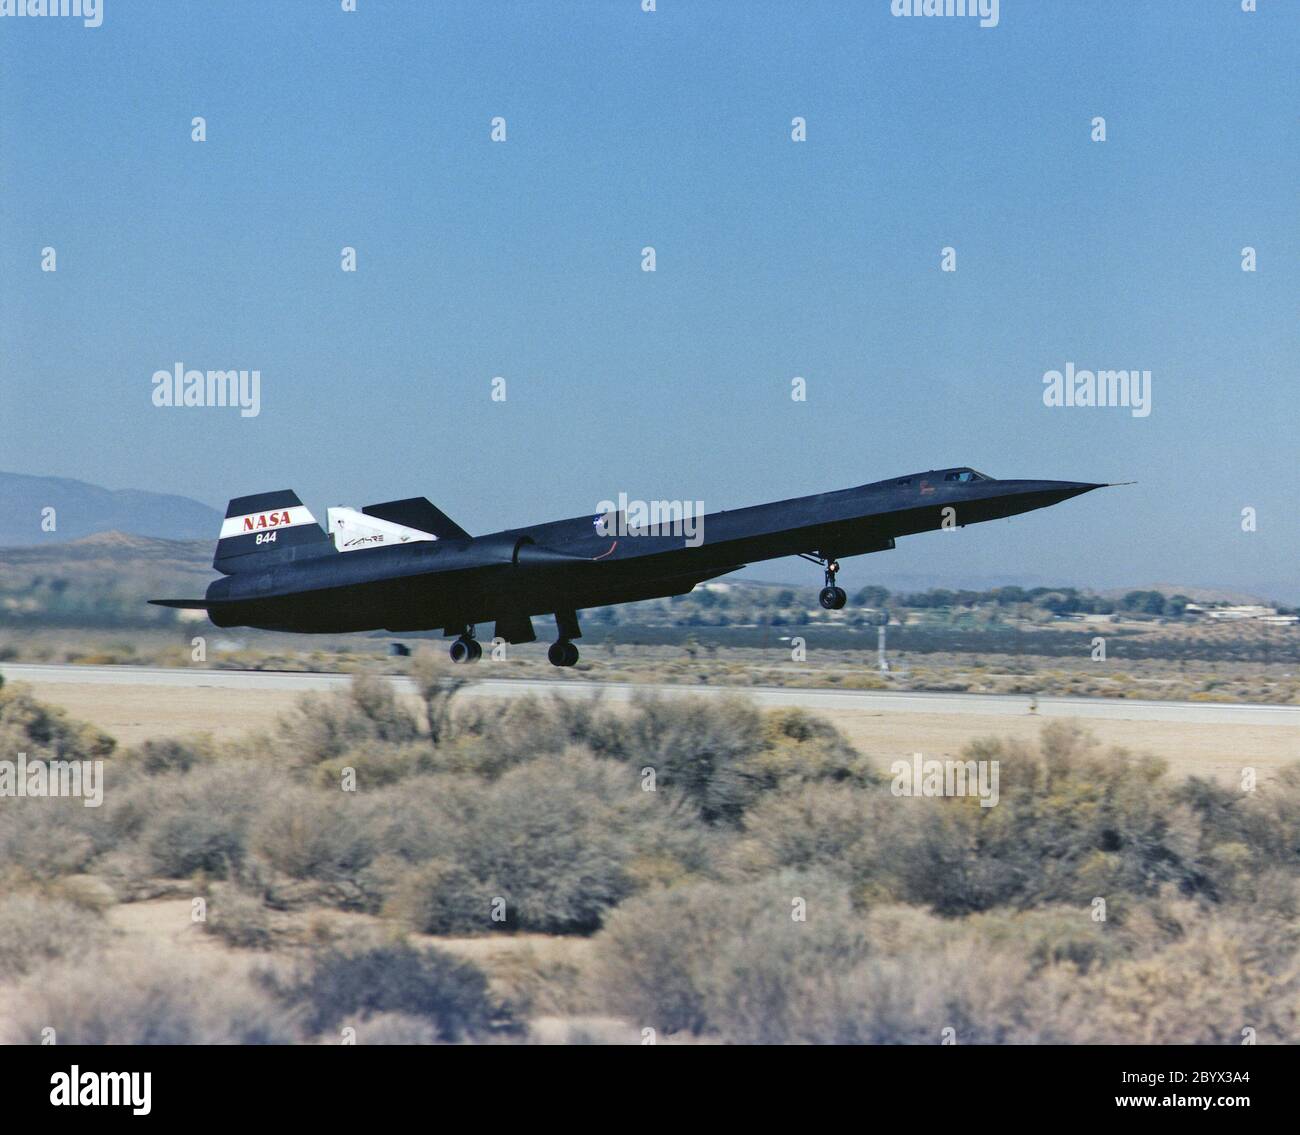 Un SR-71 de la NASA se deshace el 31 de octubre, haciendo su primer vuelo como parte del experimento NASA/Rocketdyne/Lockheed Martin Linear Aerospike SR-71 (LASRE) en el Centro de Investigación de Vuelo Dryden de la NASA, Edwards, California. El SR-71 despegó a las 8:31 a.m. PST. El avión voló durante una hora y cincuenta minutos, alcanzando una velocidad máxima de Mach 1.2 antes de aterrizar en Edwards a las 10:21 a.m. PST, validando con éxito la configuración de experimento SR-71/linear de aeropicio. El objetivo del primer vuelo fue evaluar las características aerodinámicas y el manejo del experimento SR-71/lineal de aeropicio Foto de stock